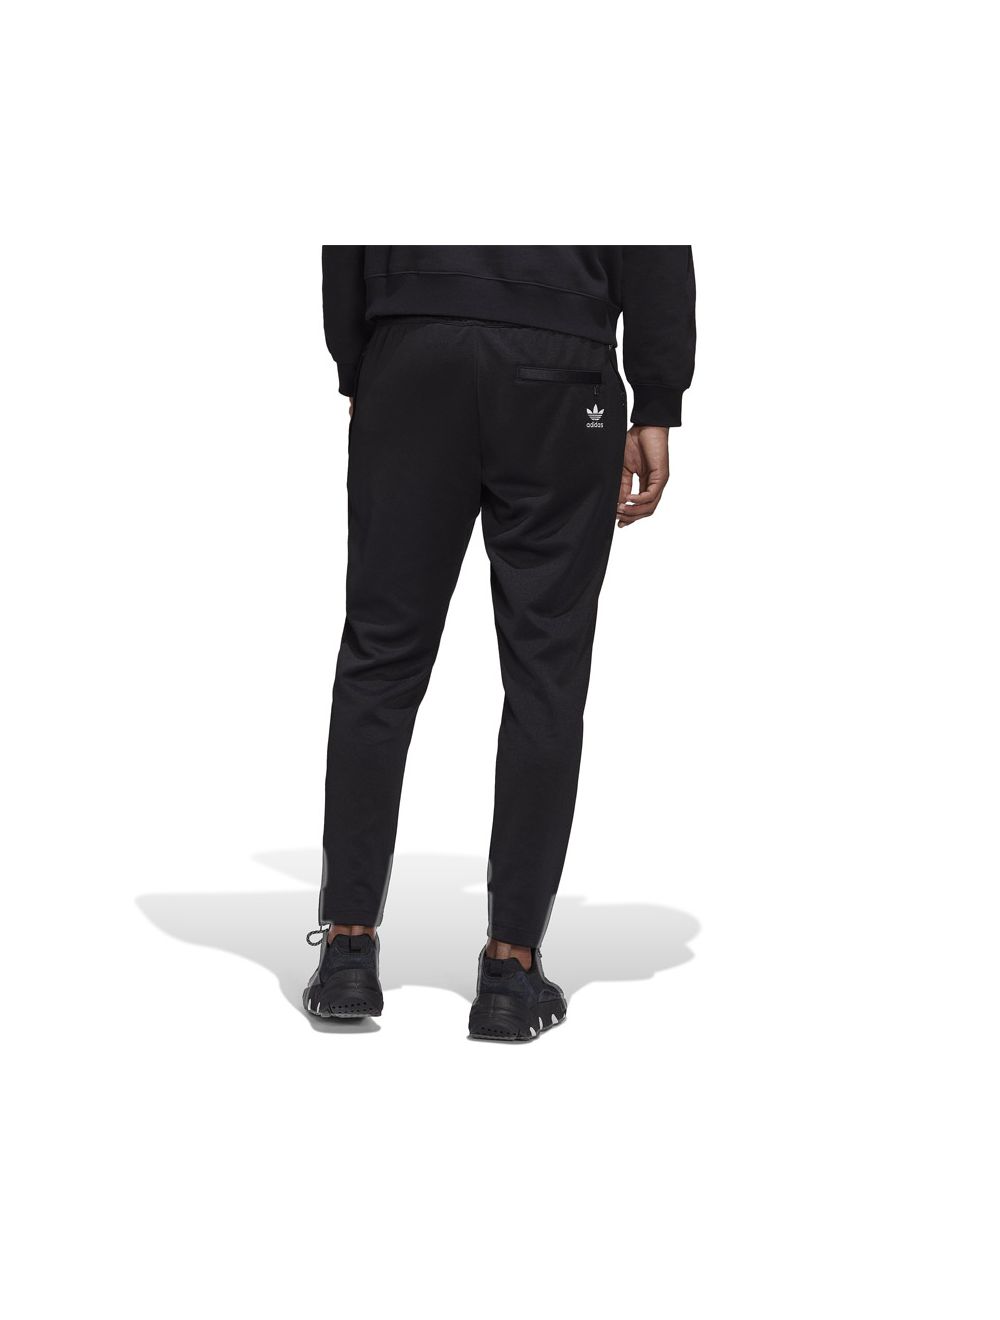 adidas Originals slim track pant in black